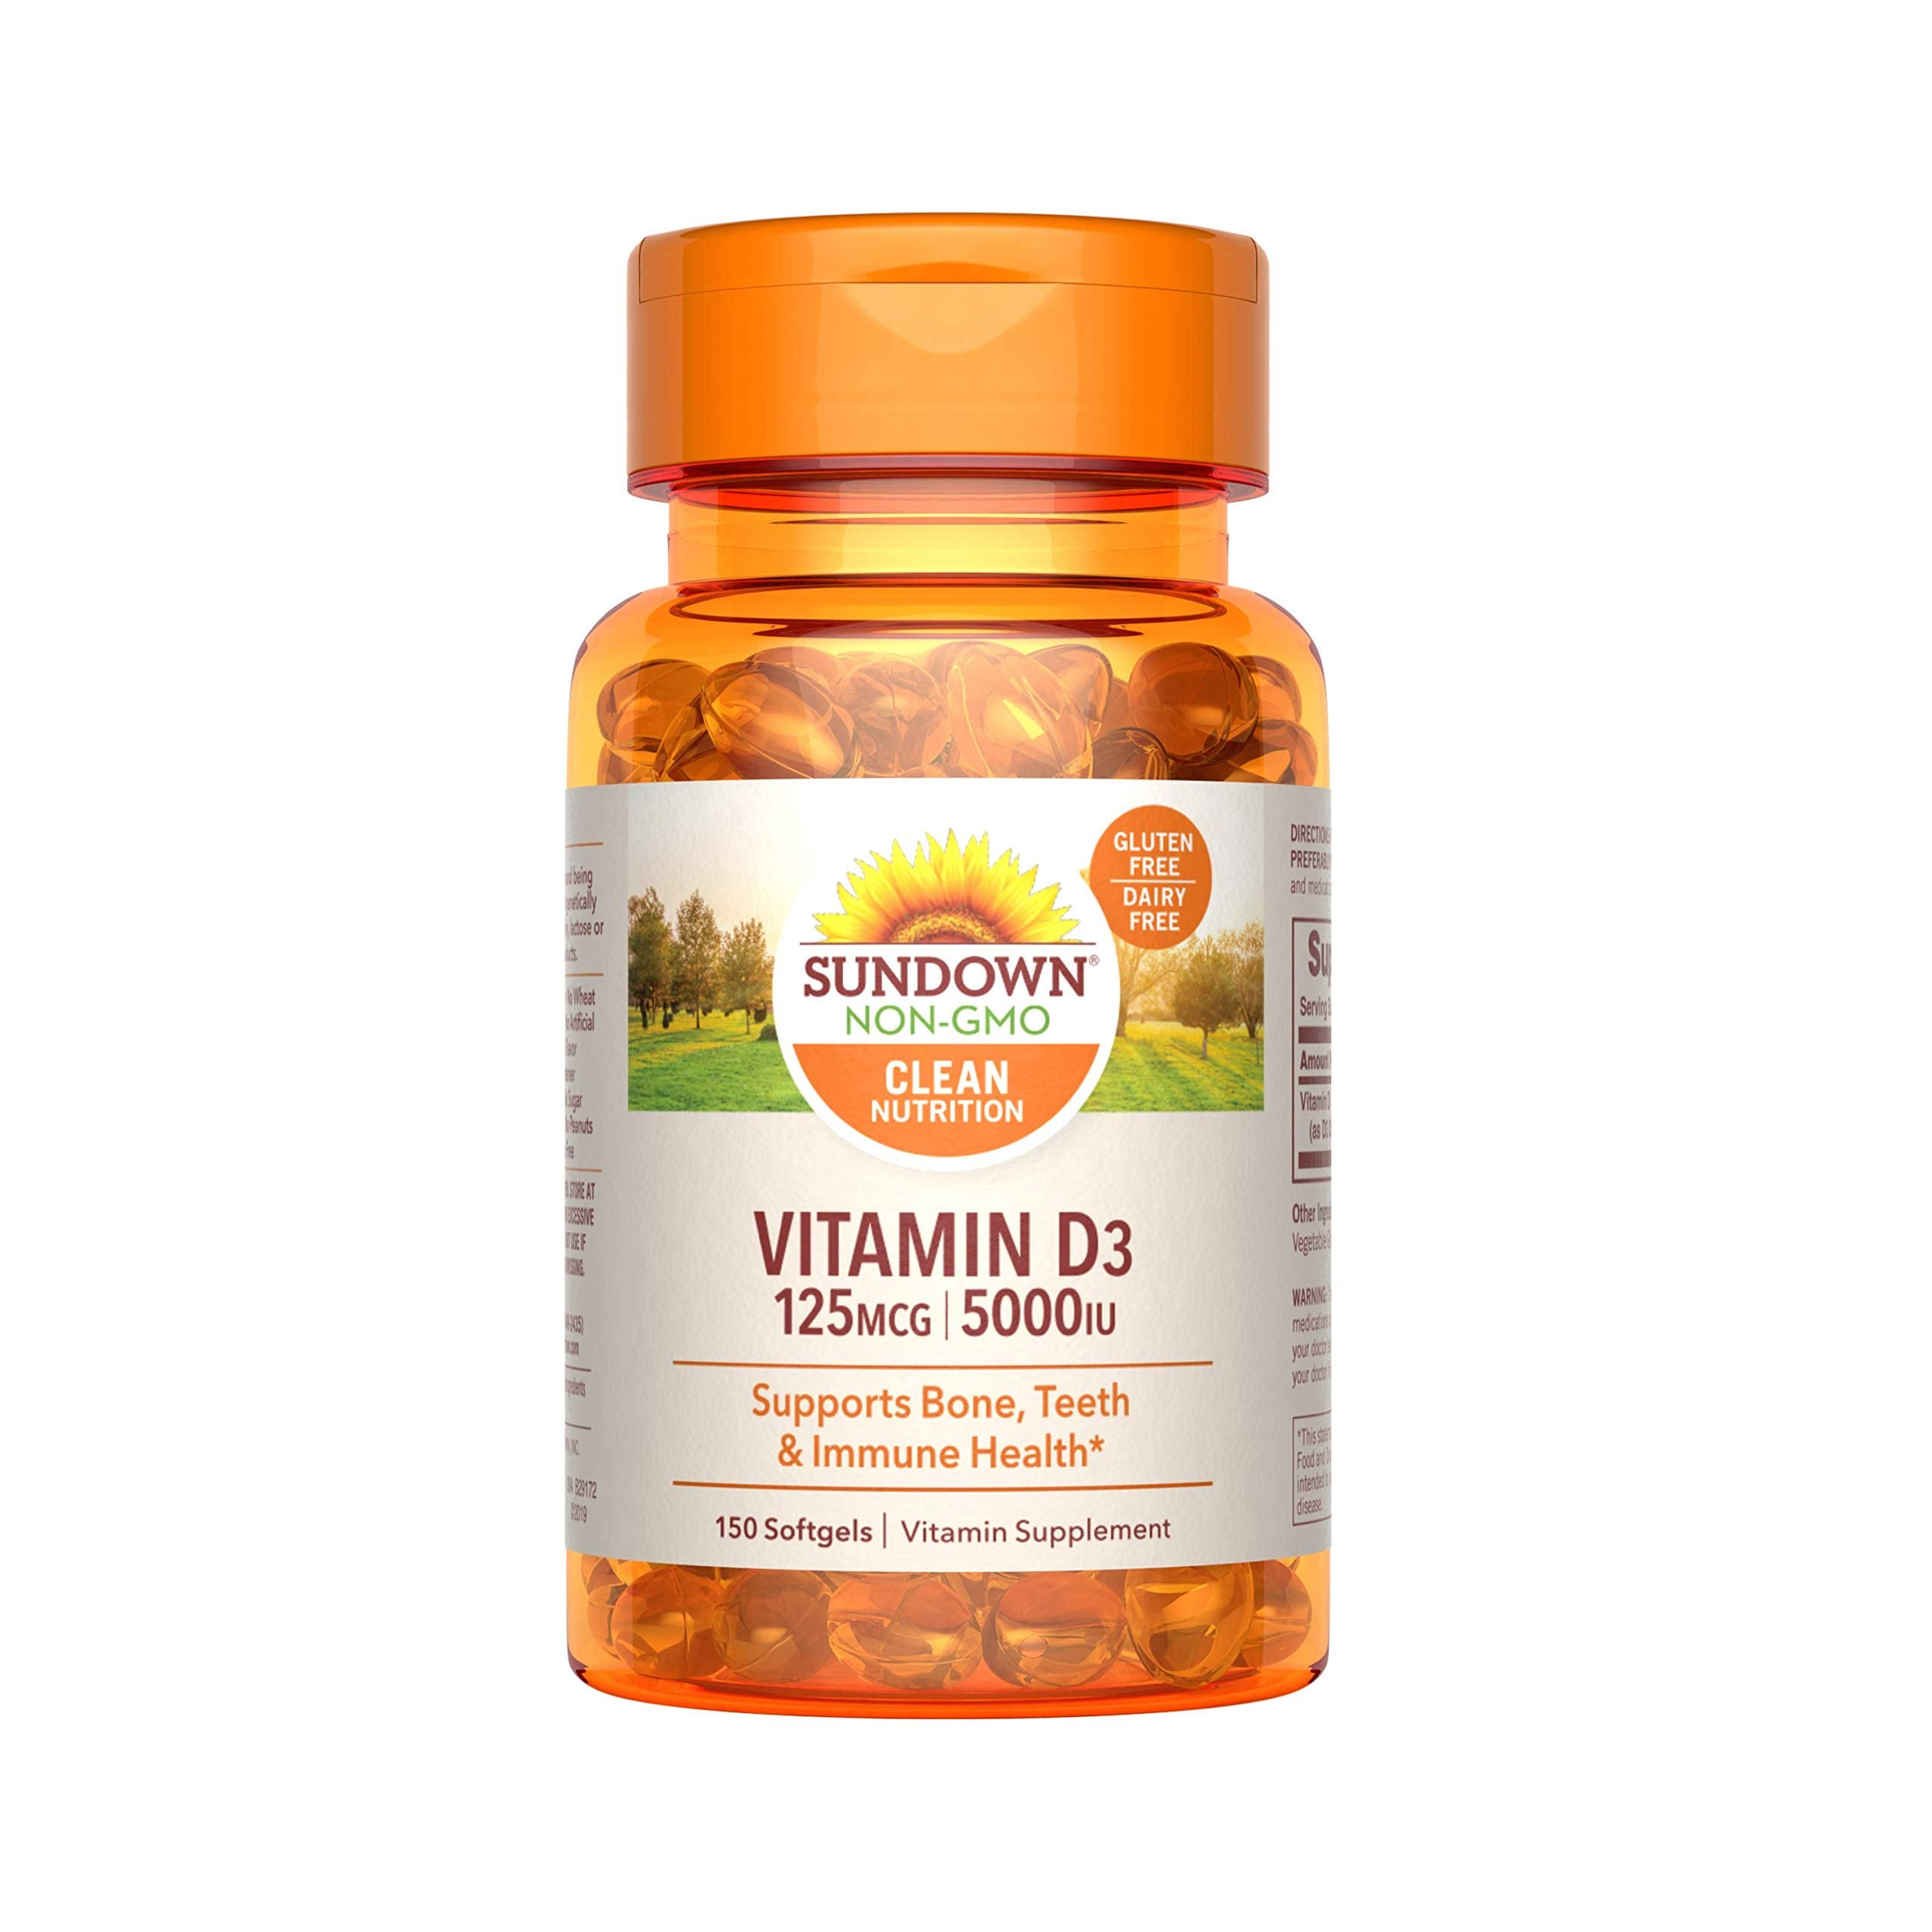 Sundown Naturals Vitamin D3 - 5000 Iu, 150 softgels